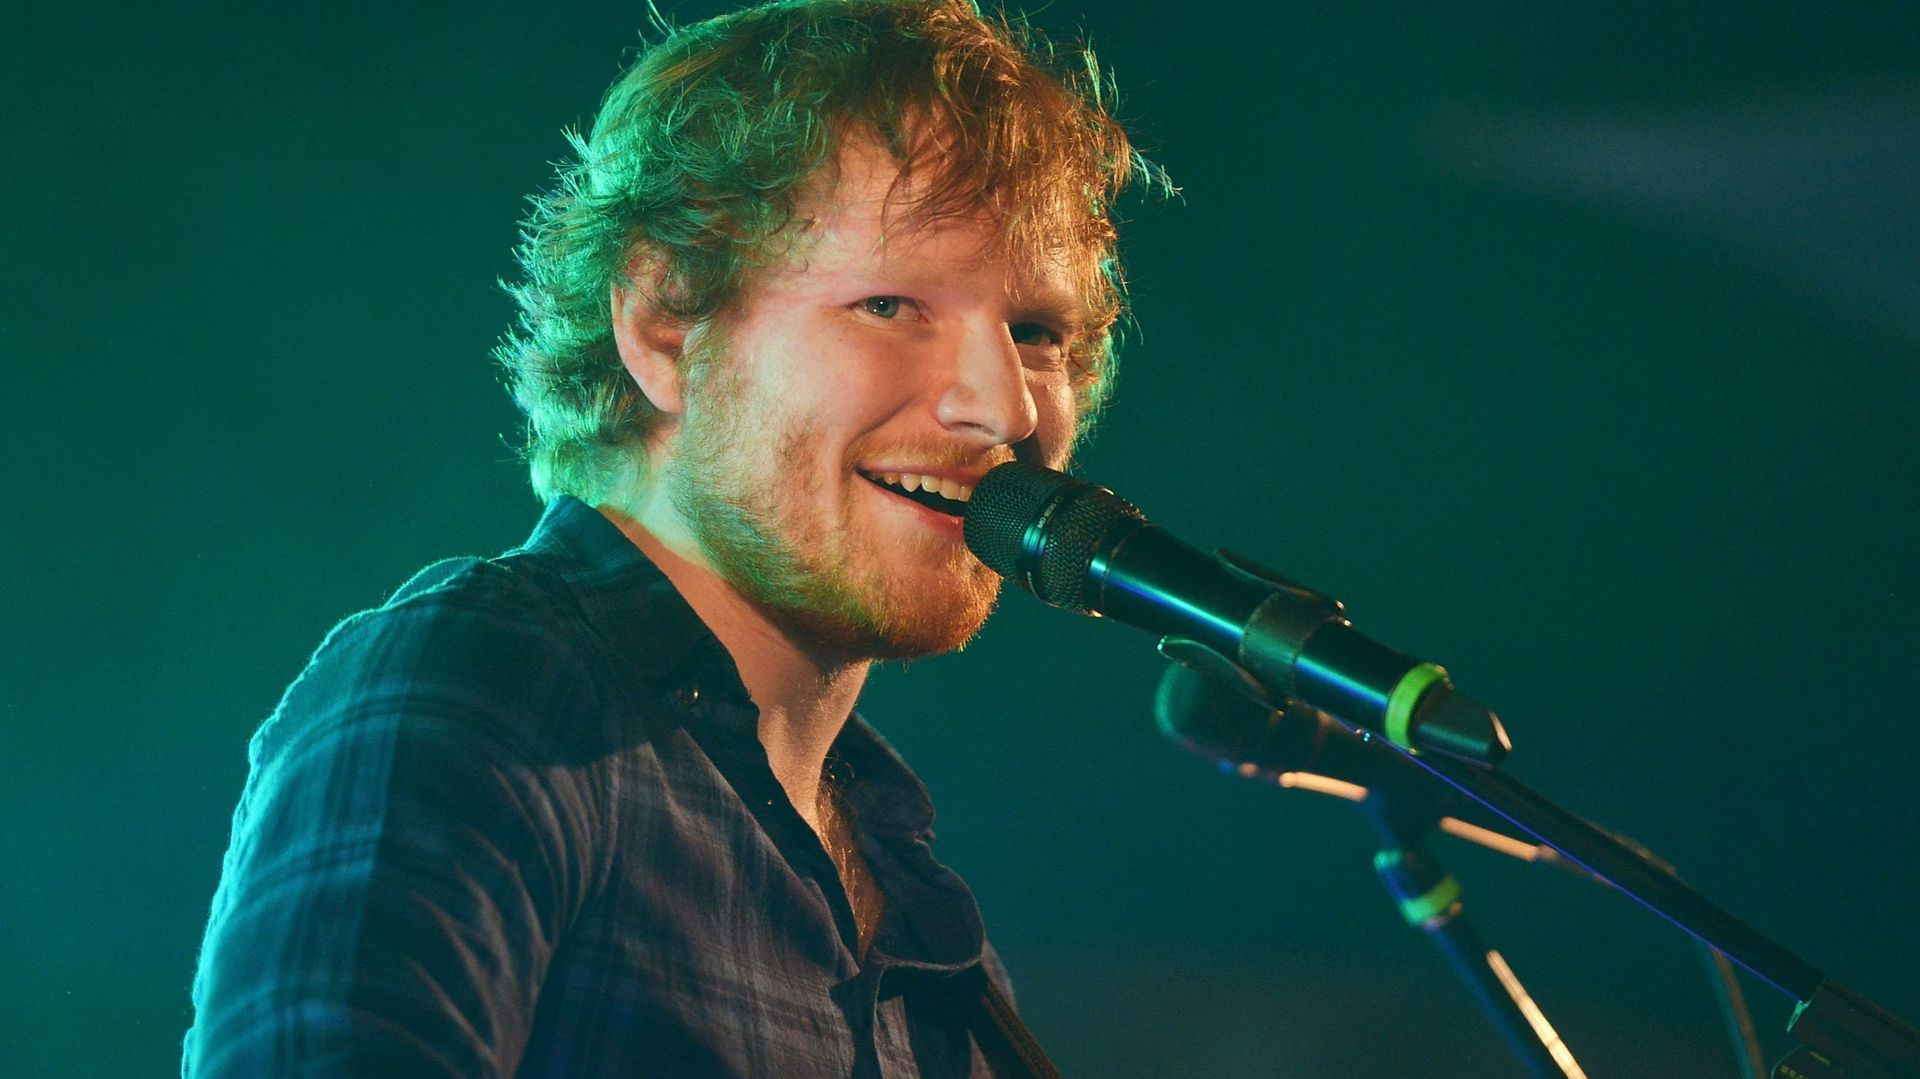 Deux titres en exclusivité pendant le concert d’Ed Sheeran